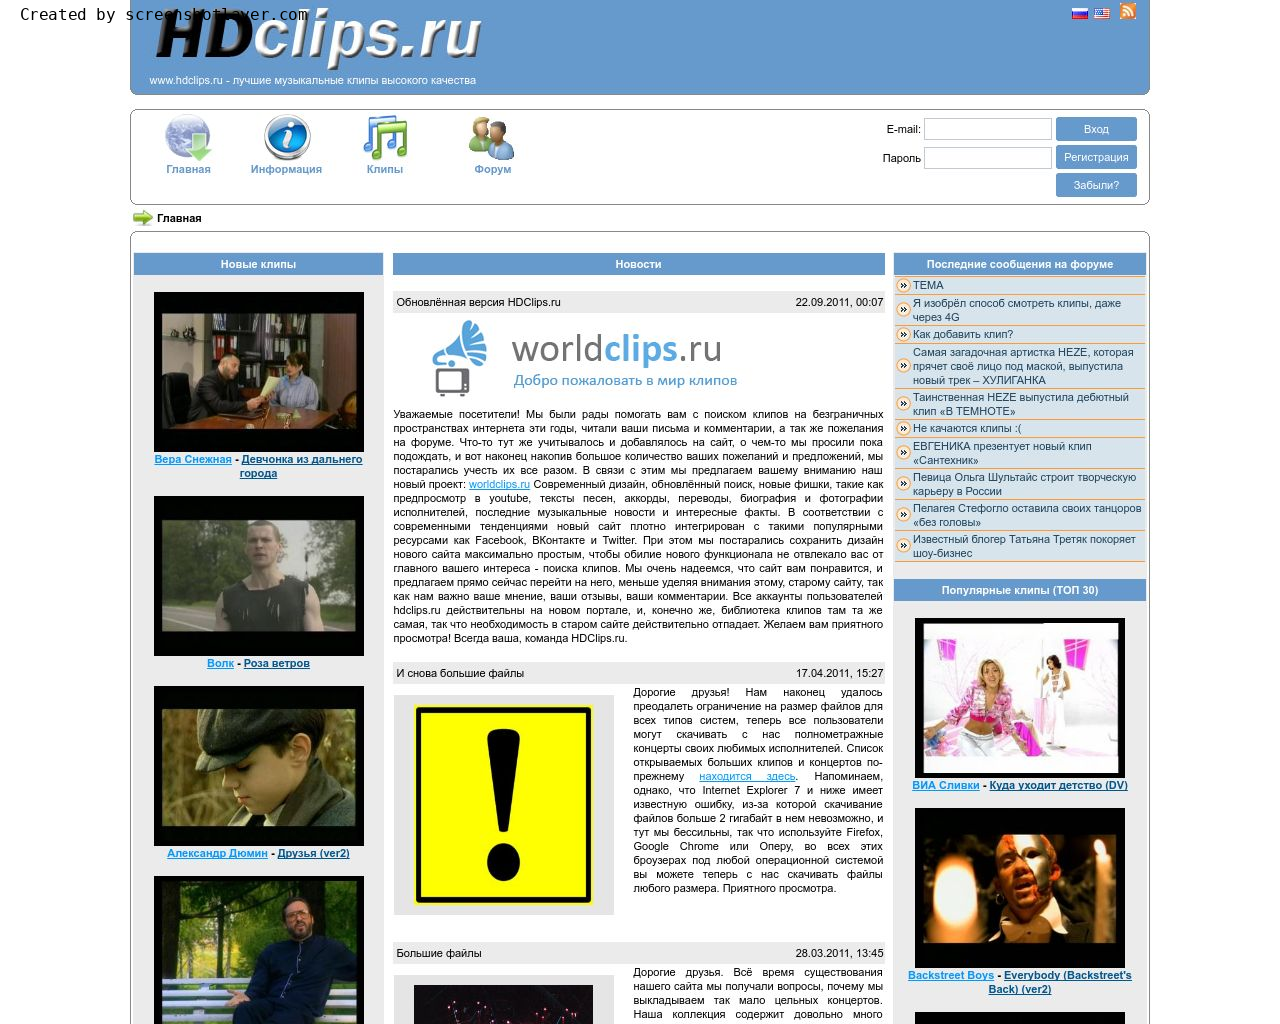 Изображение сайта hdclips.ru в разрешении 1280x1024